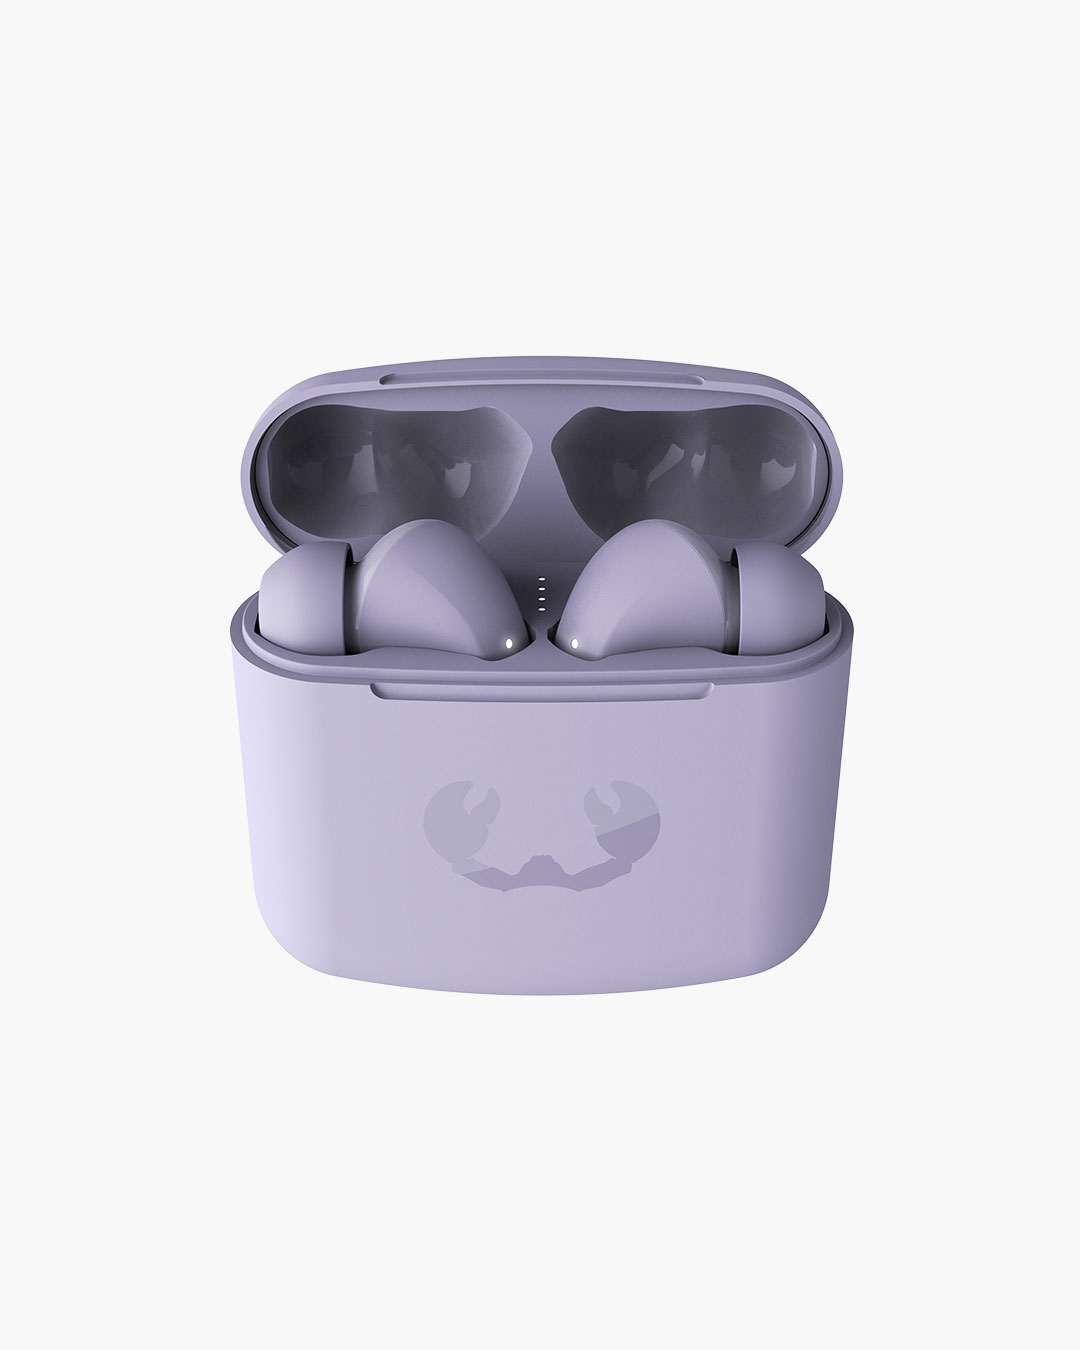 Fresh 'n Rebel - Twins 1 - True Wireless In-ear headphones with ear tip - Dreamy Lilac